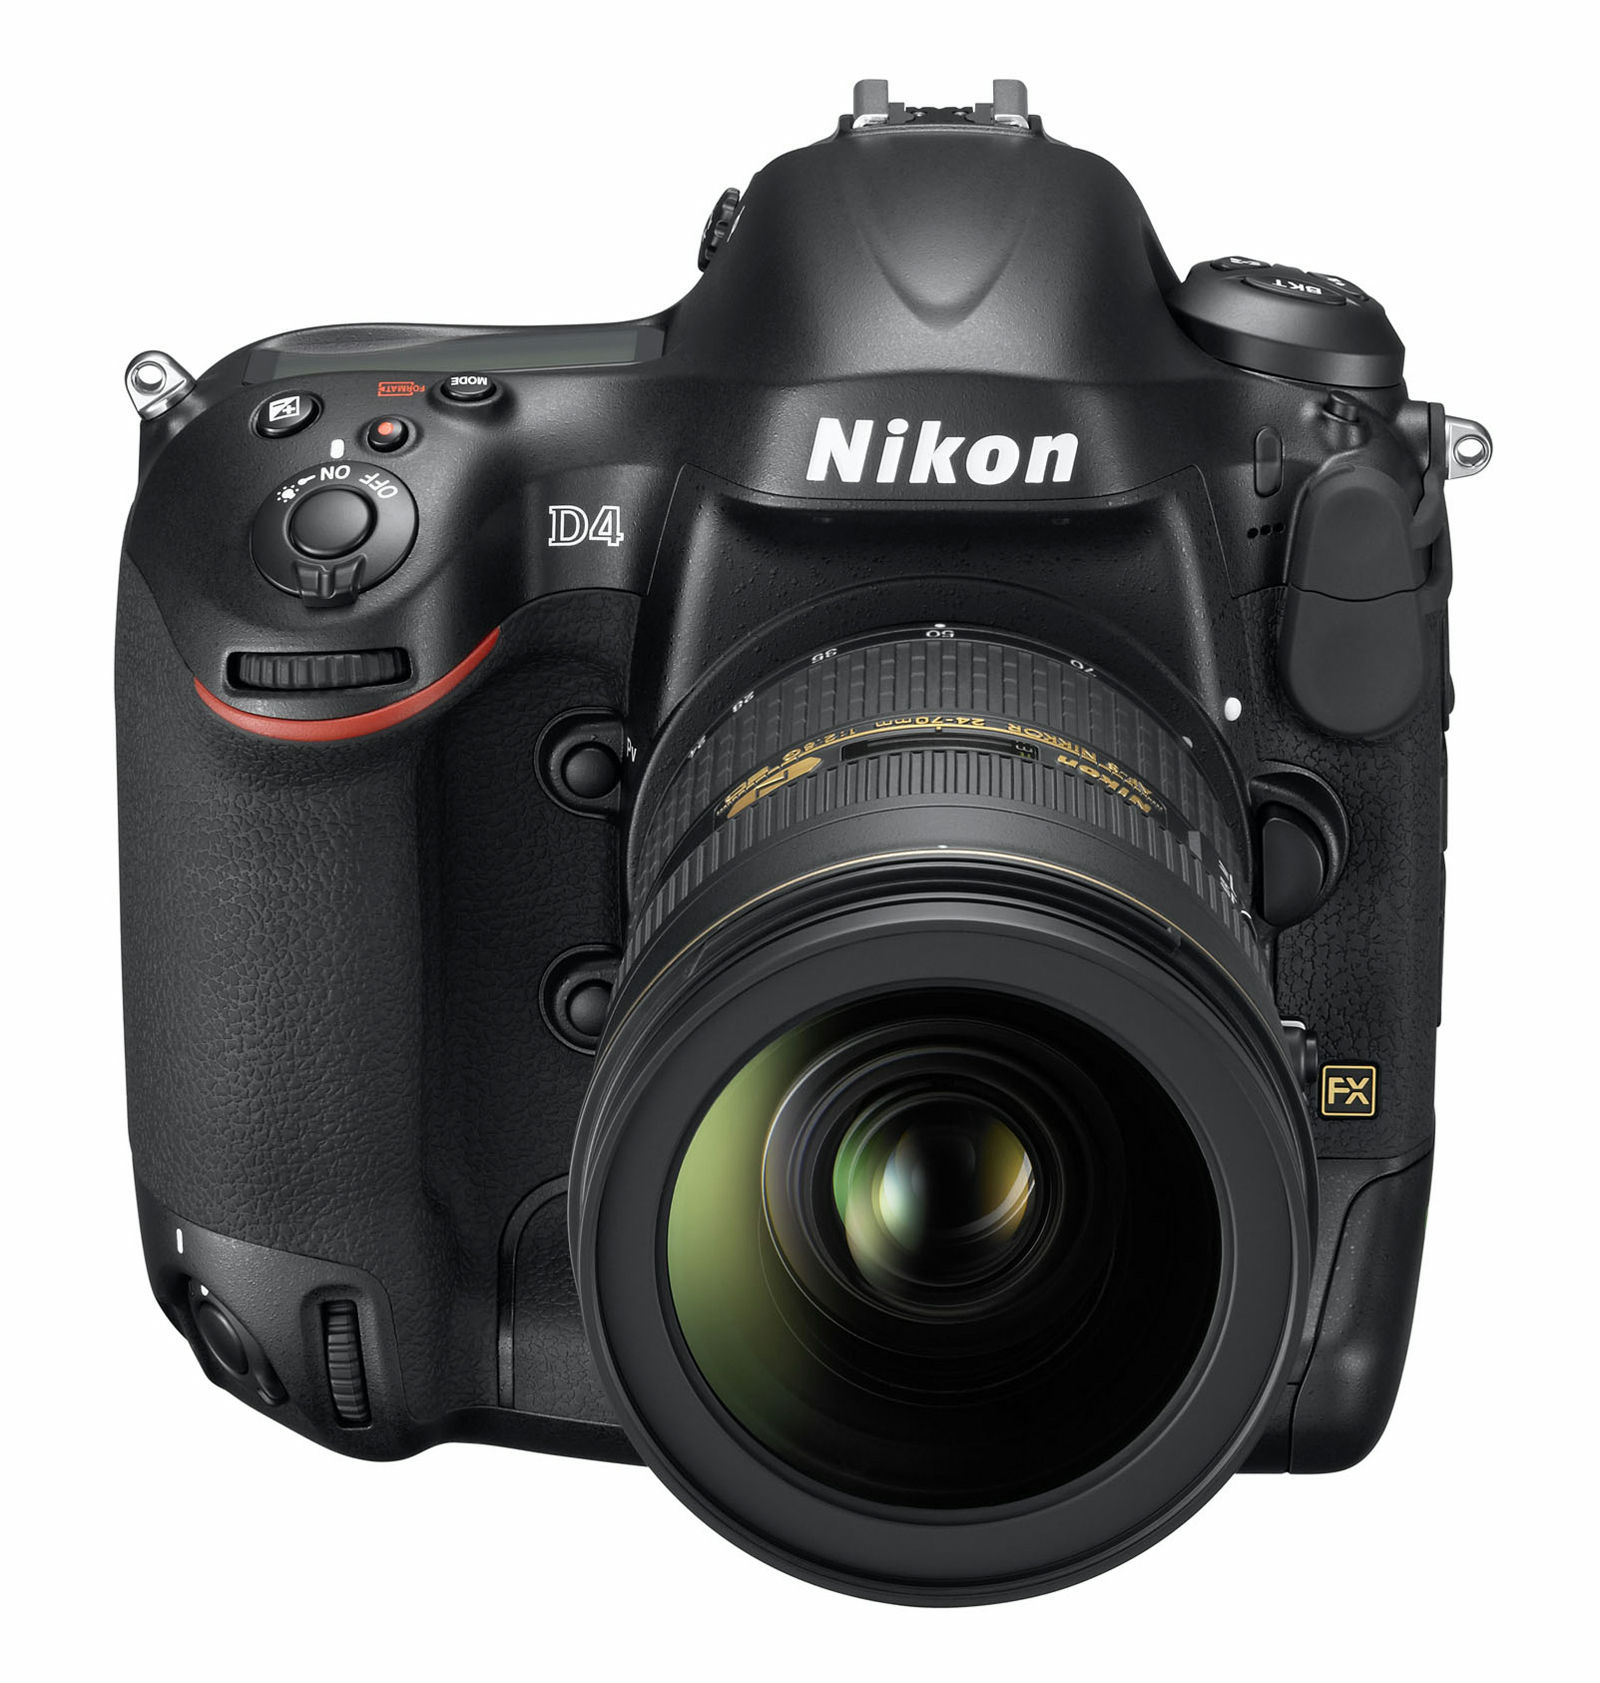 「ニコン D4」発表、ついにデジタル一眼レフカメラ次世代フラッグシップモデル登場 - GIGAZINE